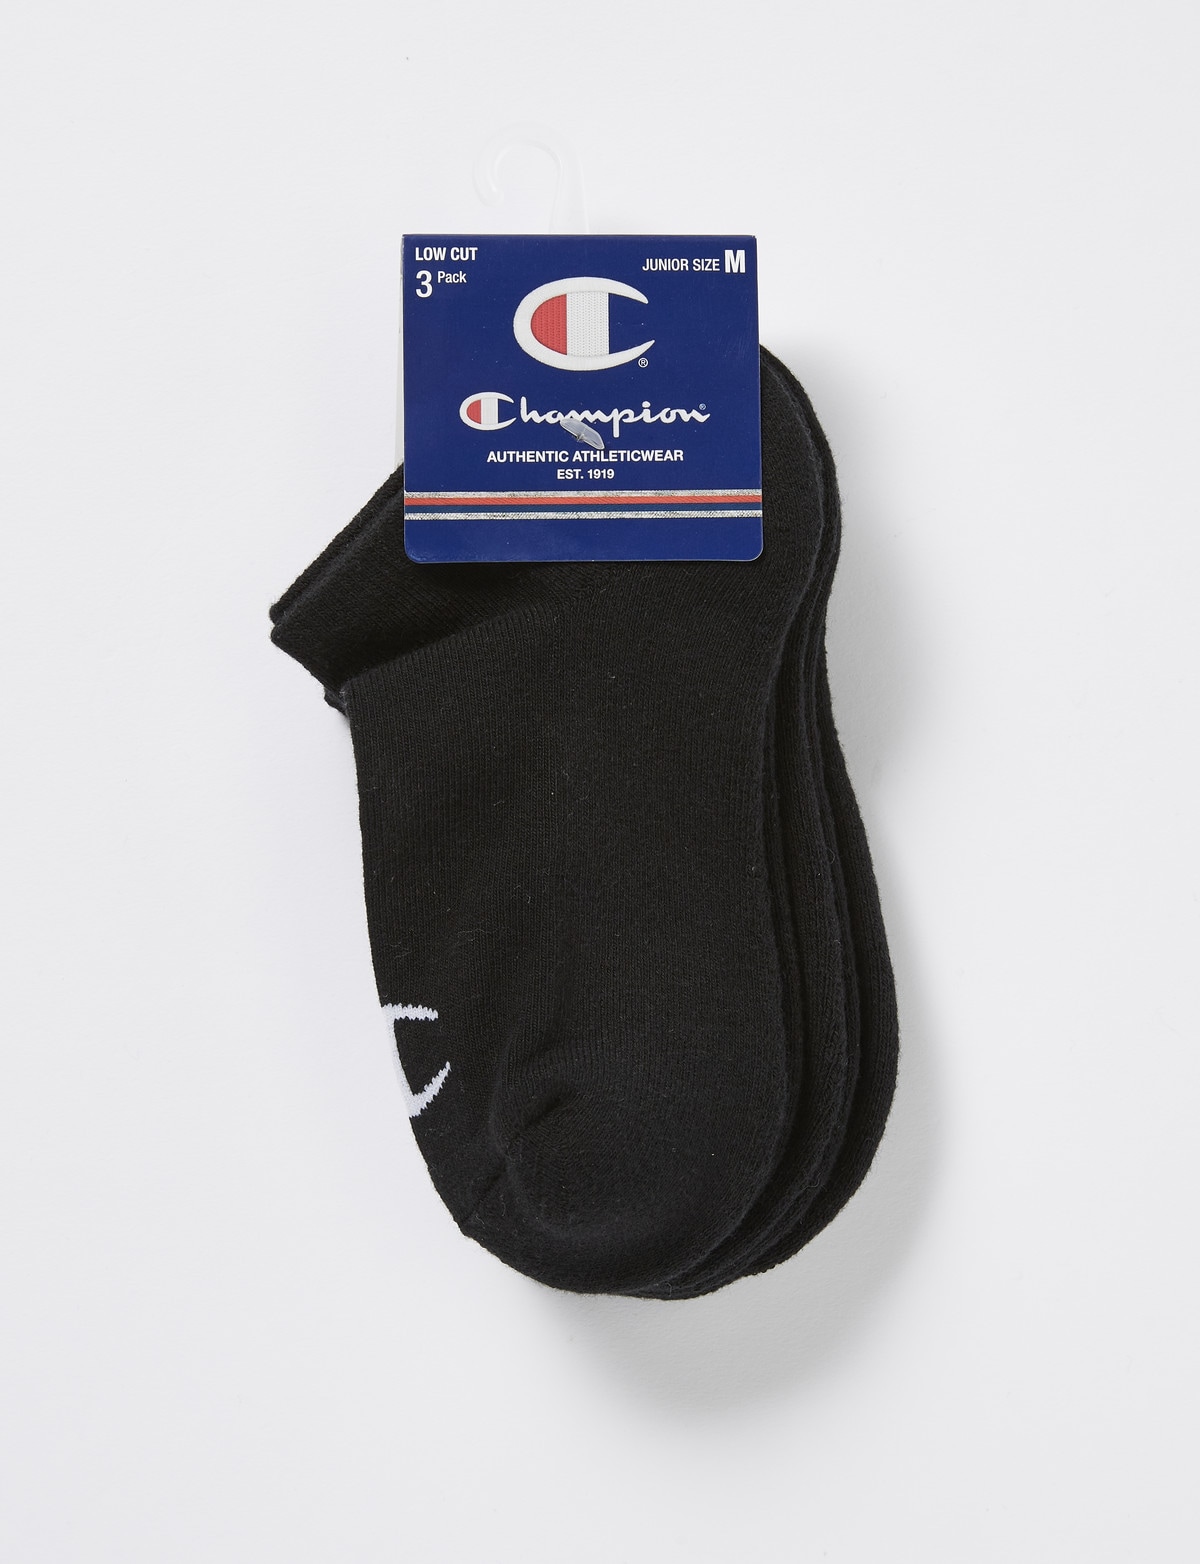 Champion Men's 6 Pack Low Cut Sock, Black, Shoe Size 12-14